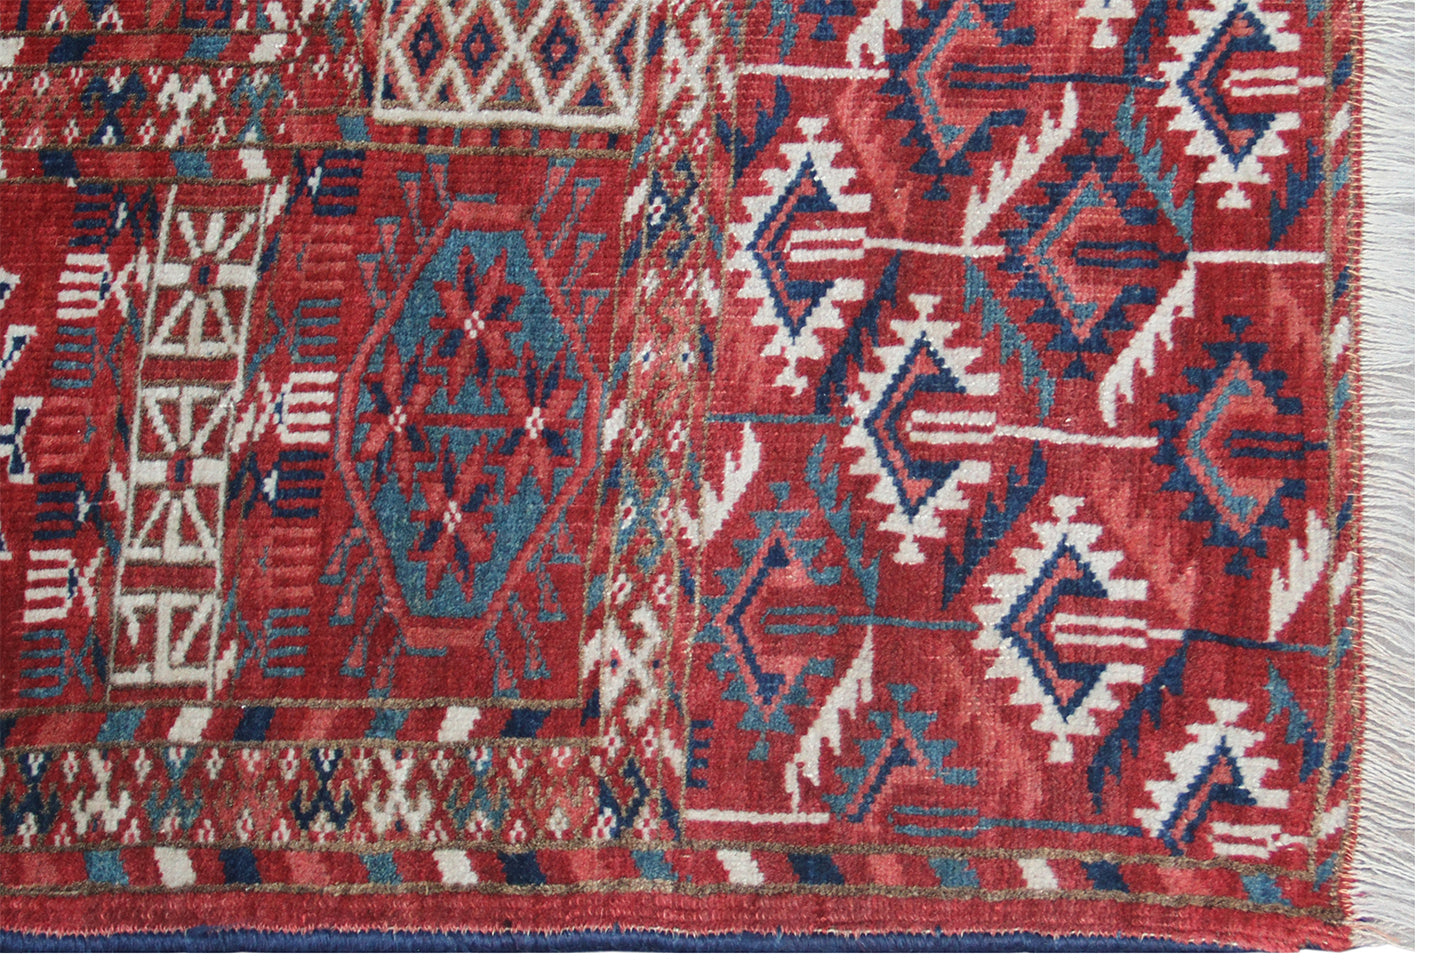 7'x11' Antique Semi-antique Turkman Main Rug